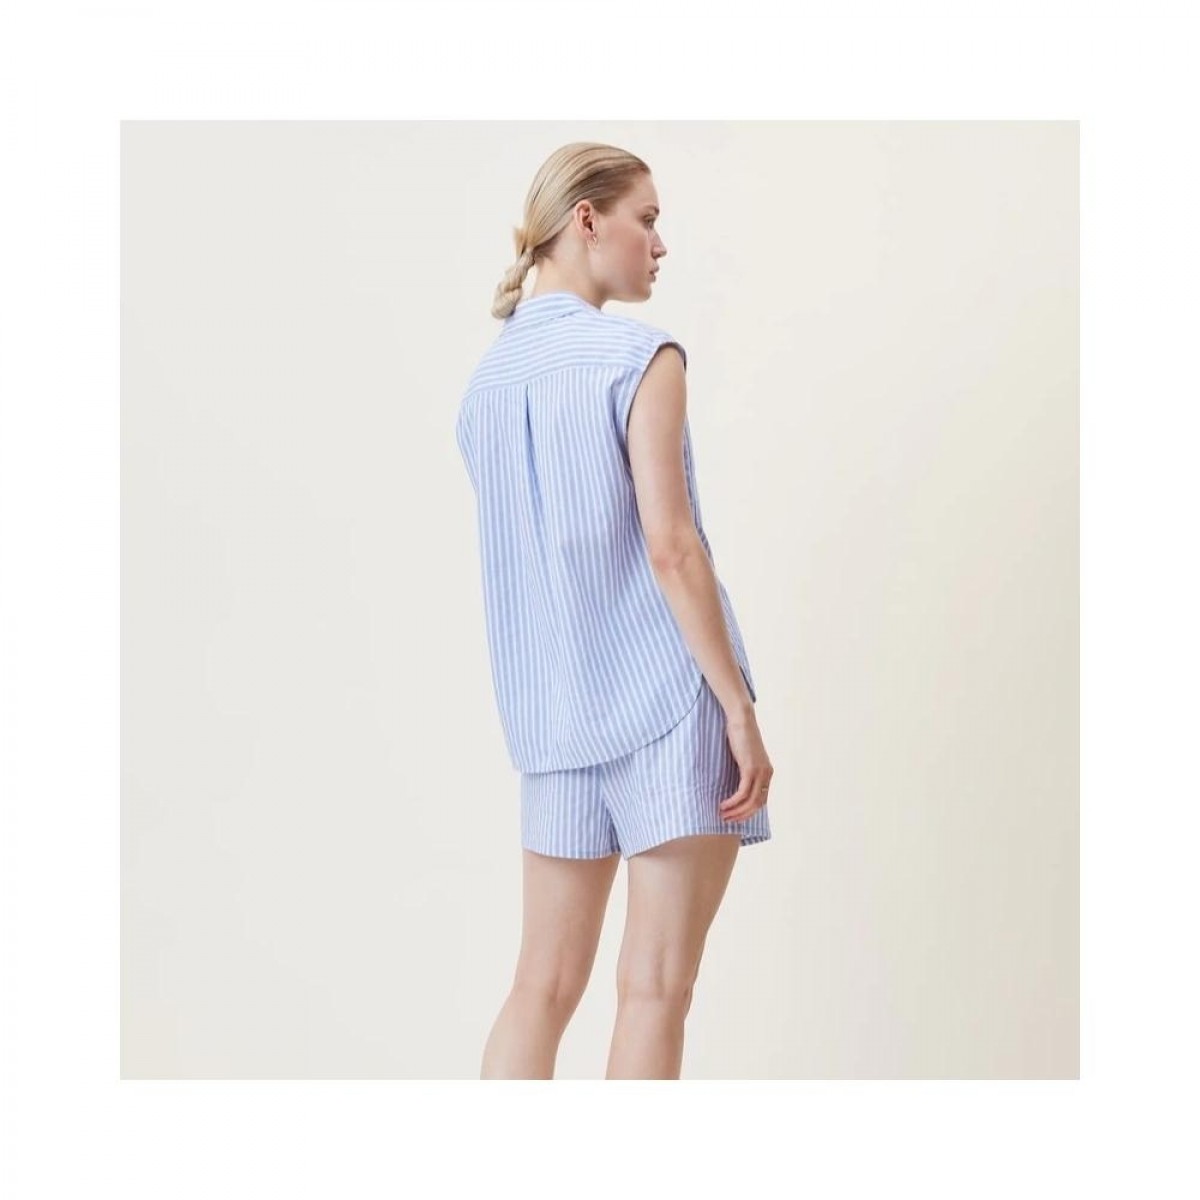 alessio shorts - clear blue - model ryg